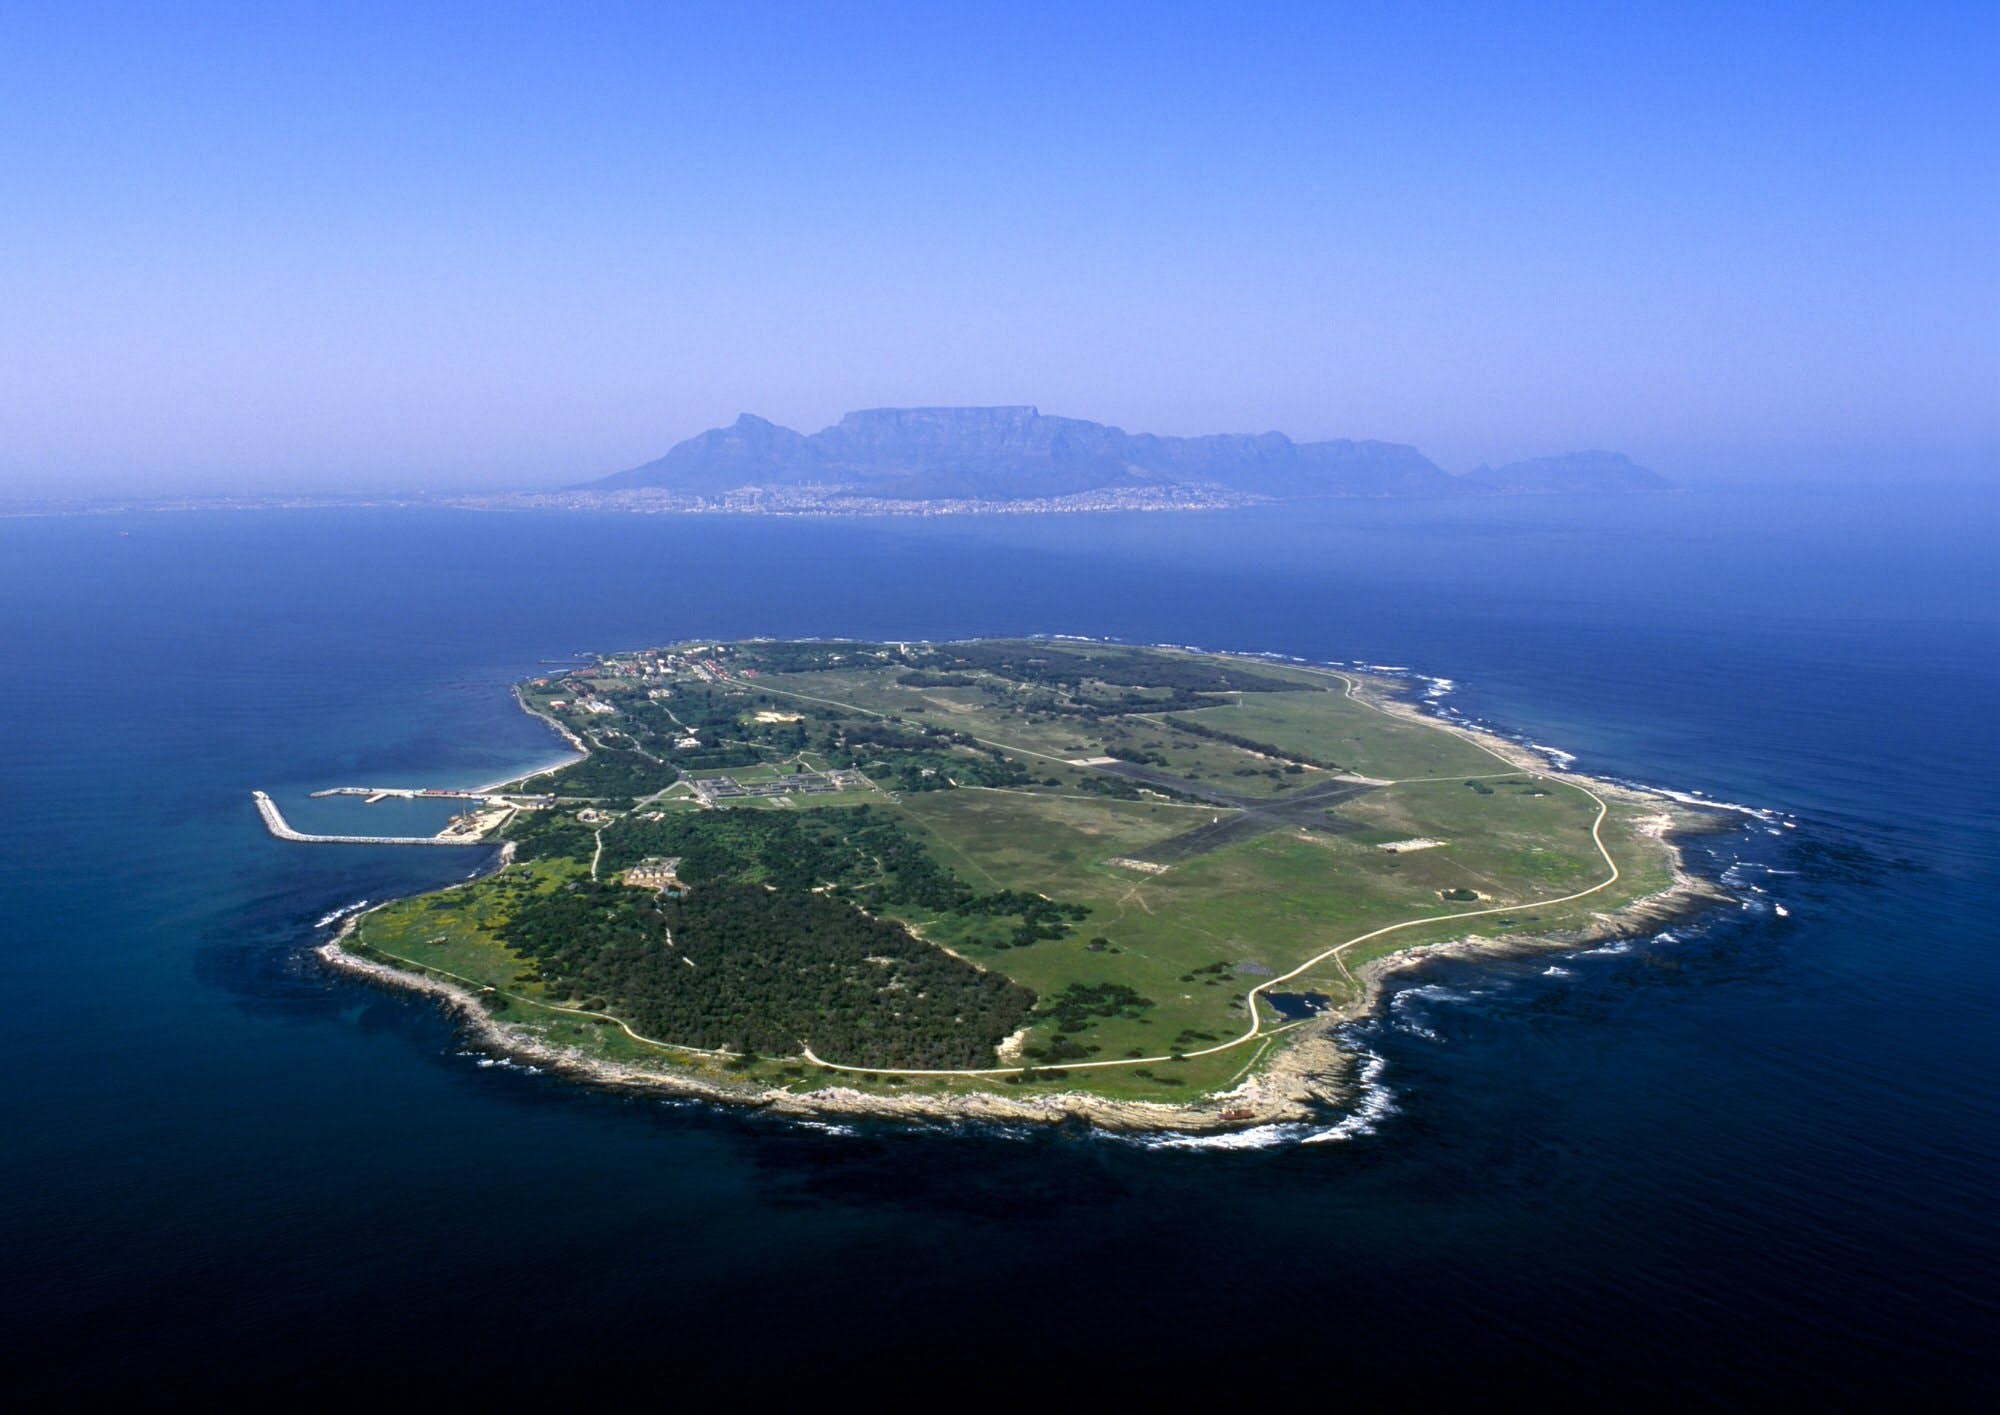 Los 10 mejores sitios de Nelson Mandela en Sudáfrica 